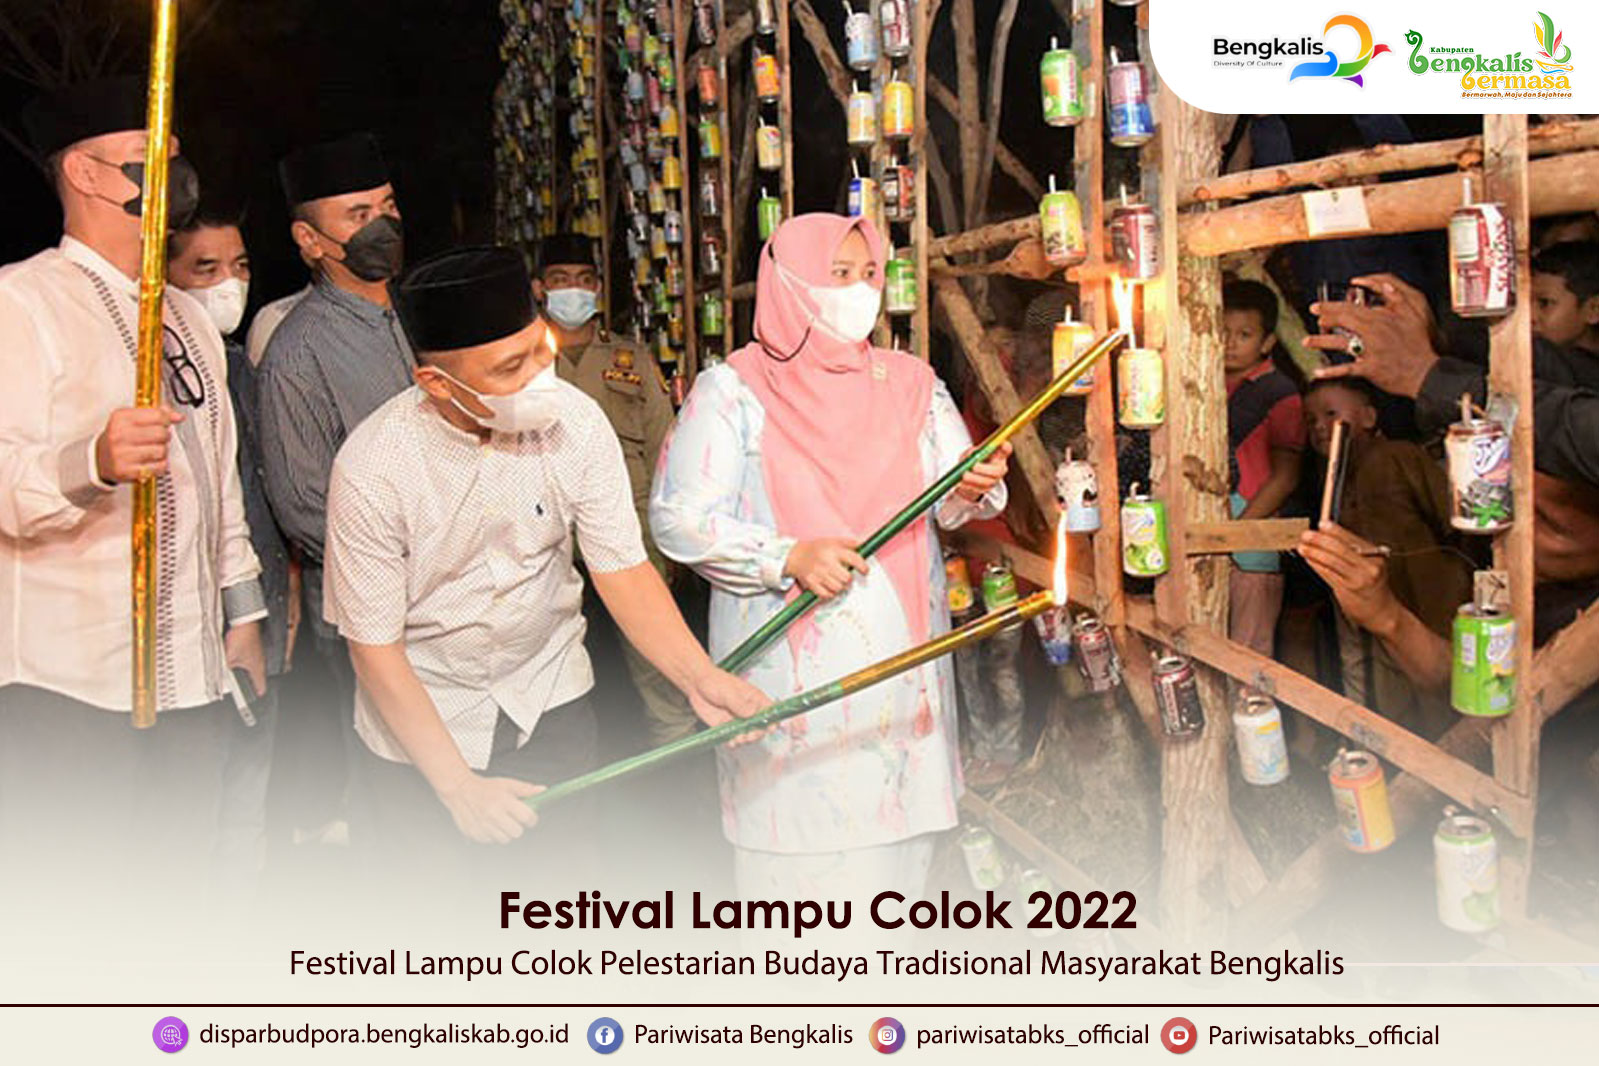 Festival Lampu Colok Pelestarian Budaya Tradisional Masyarakat Bengkalis